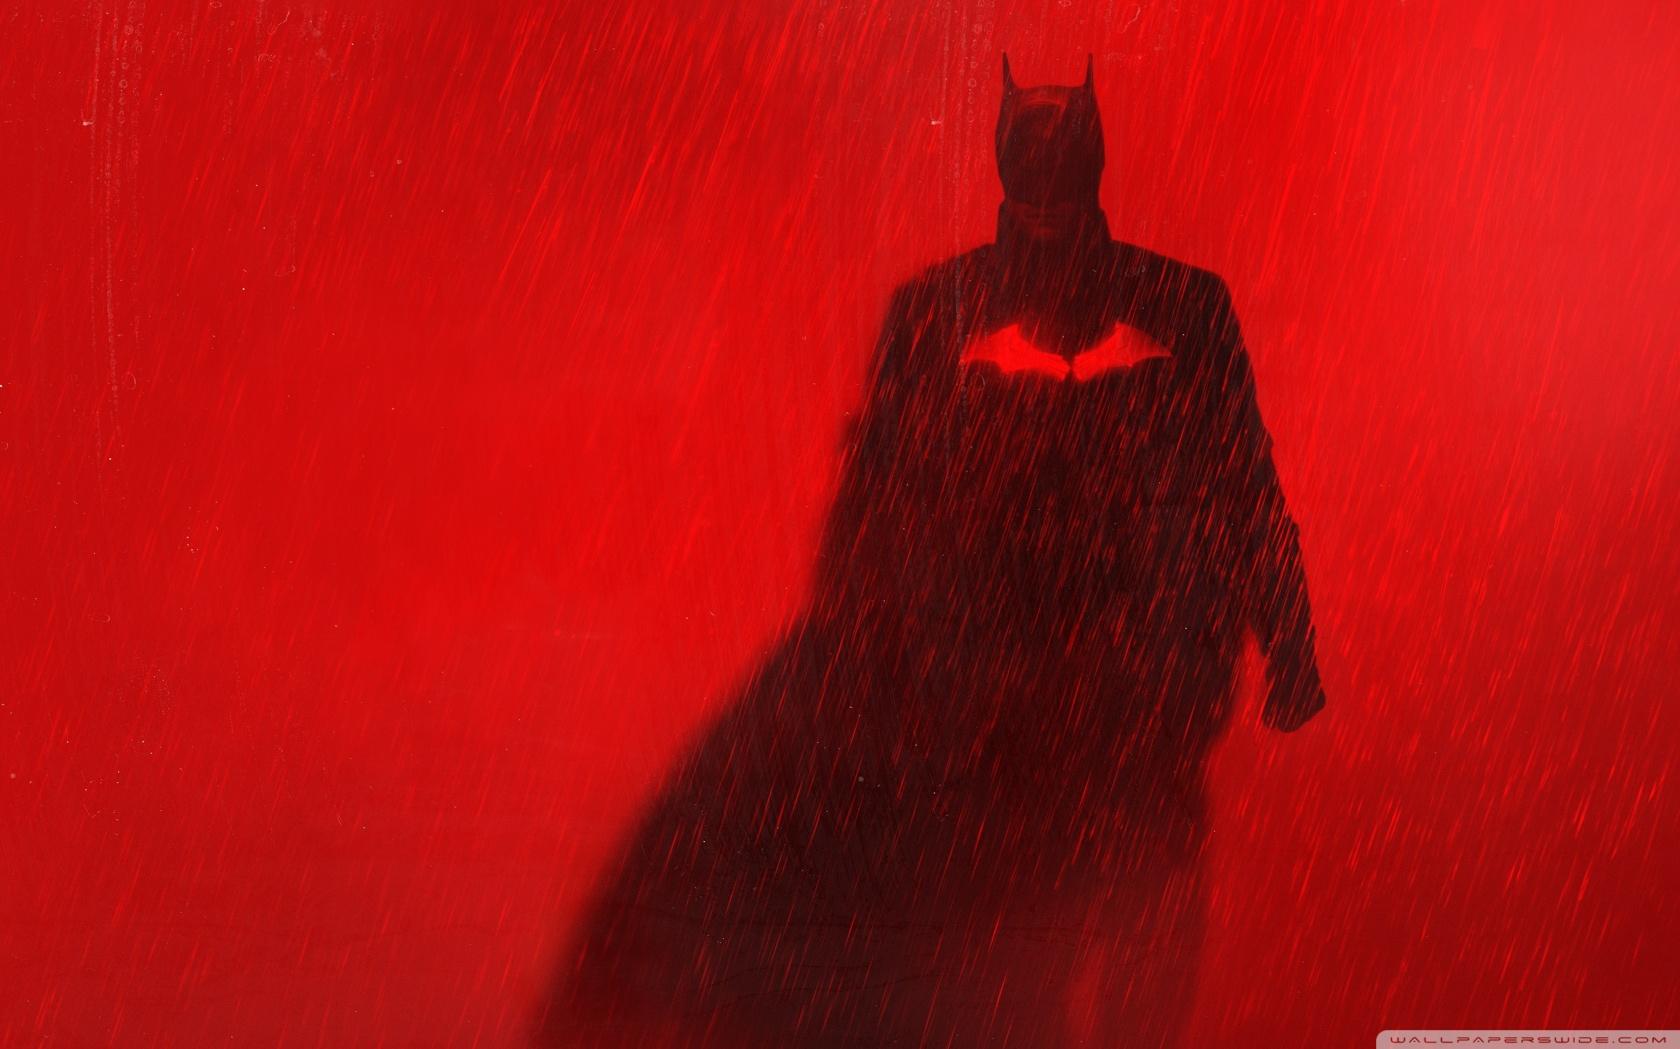 Batman In The Rain Ultra HD Desktop Background Wallpaper For 4k